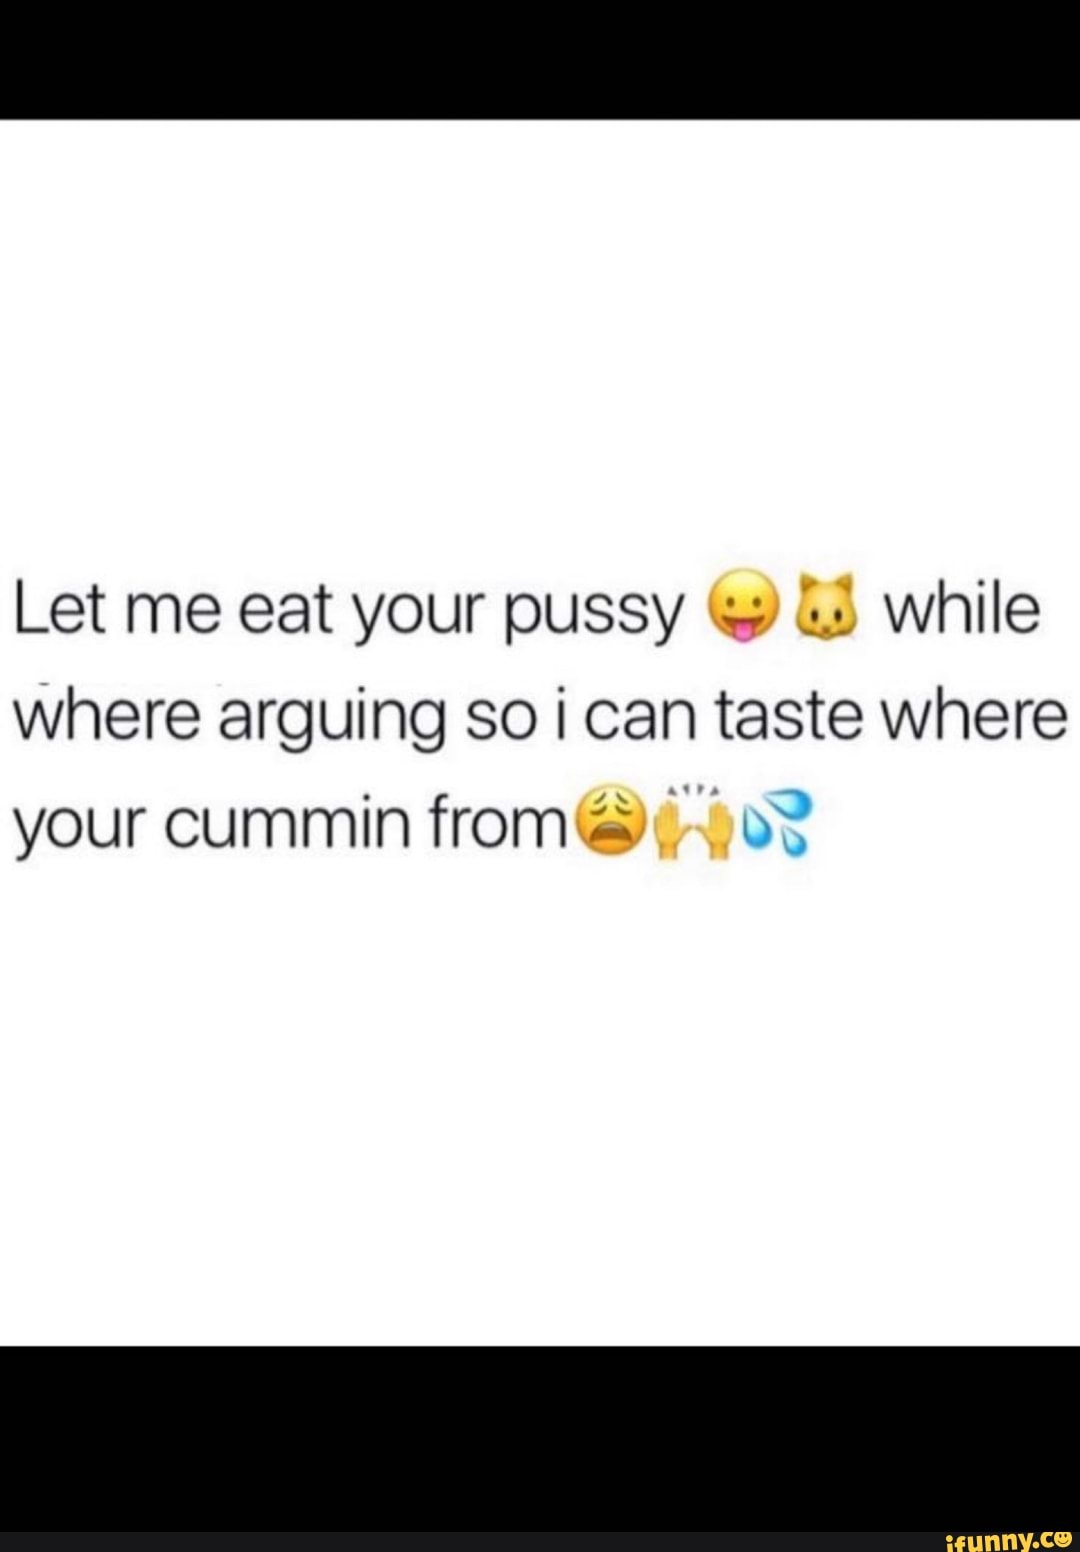 Lemme eat that pussy